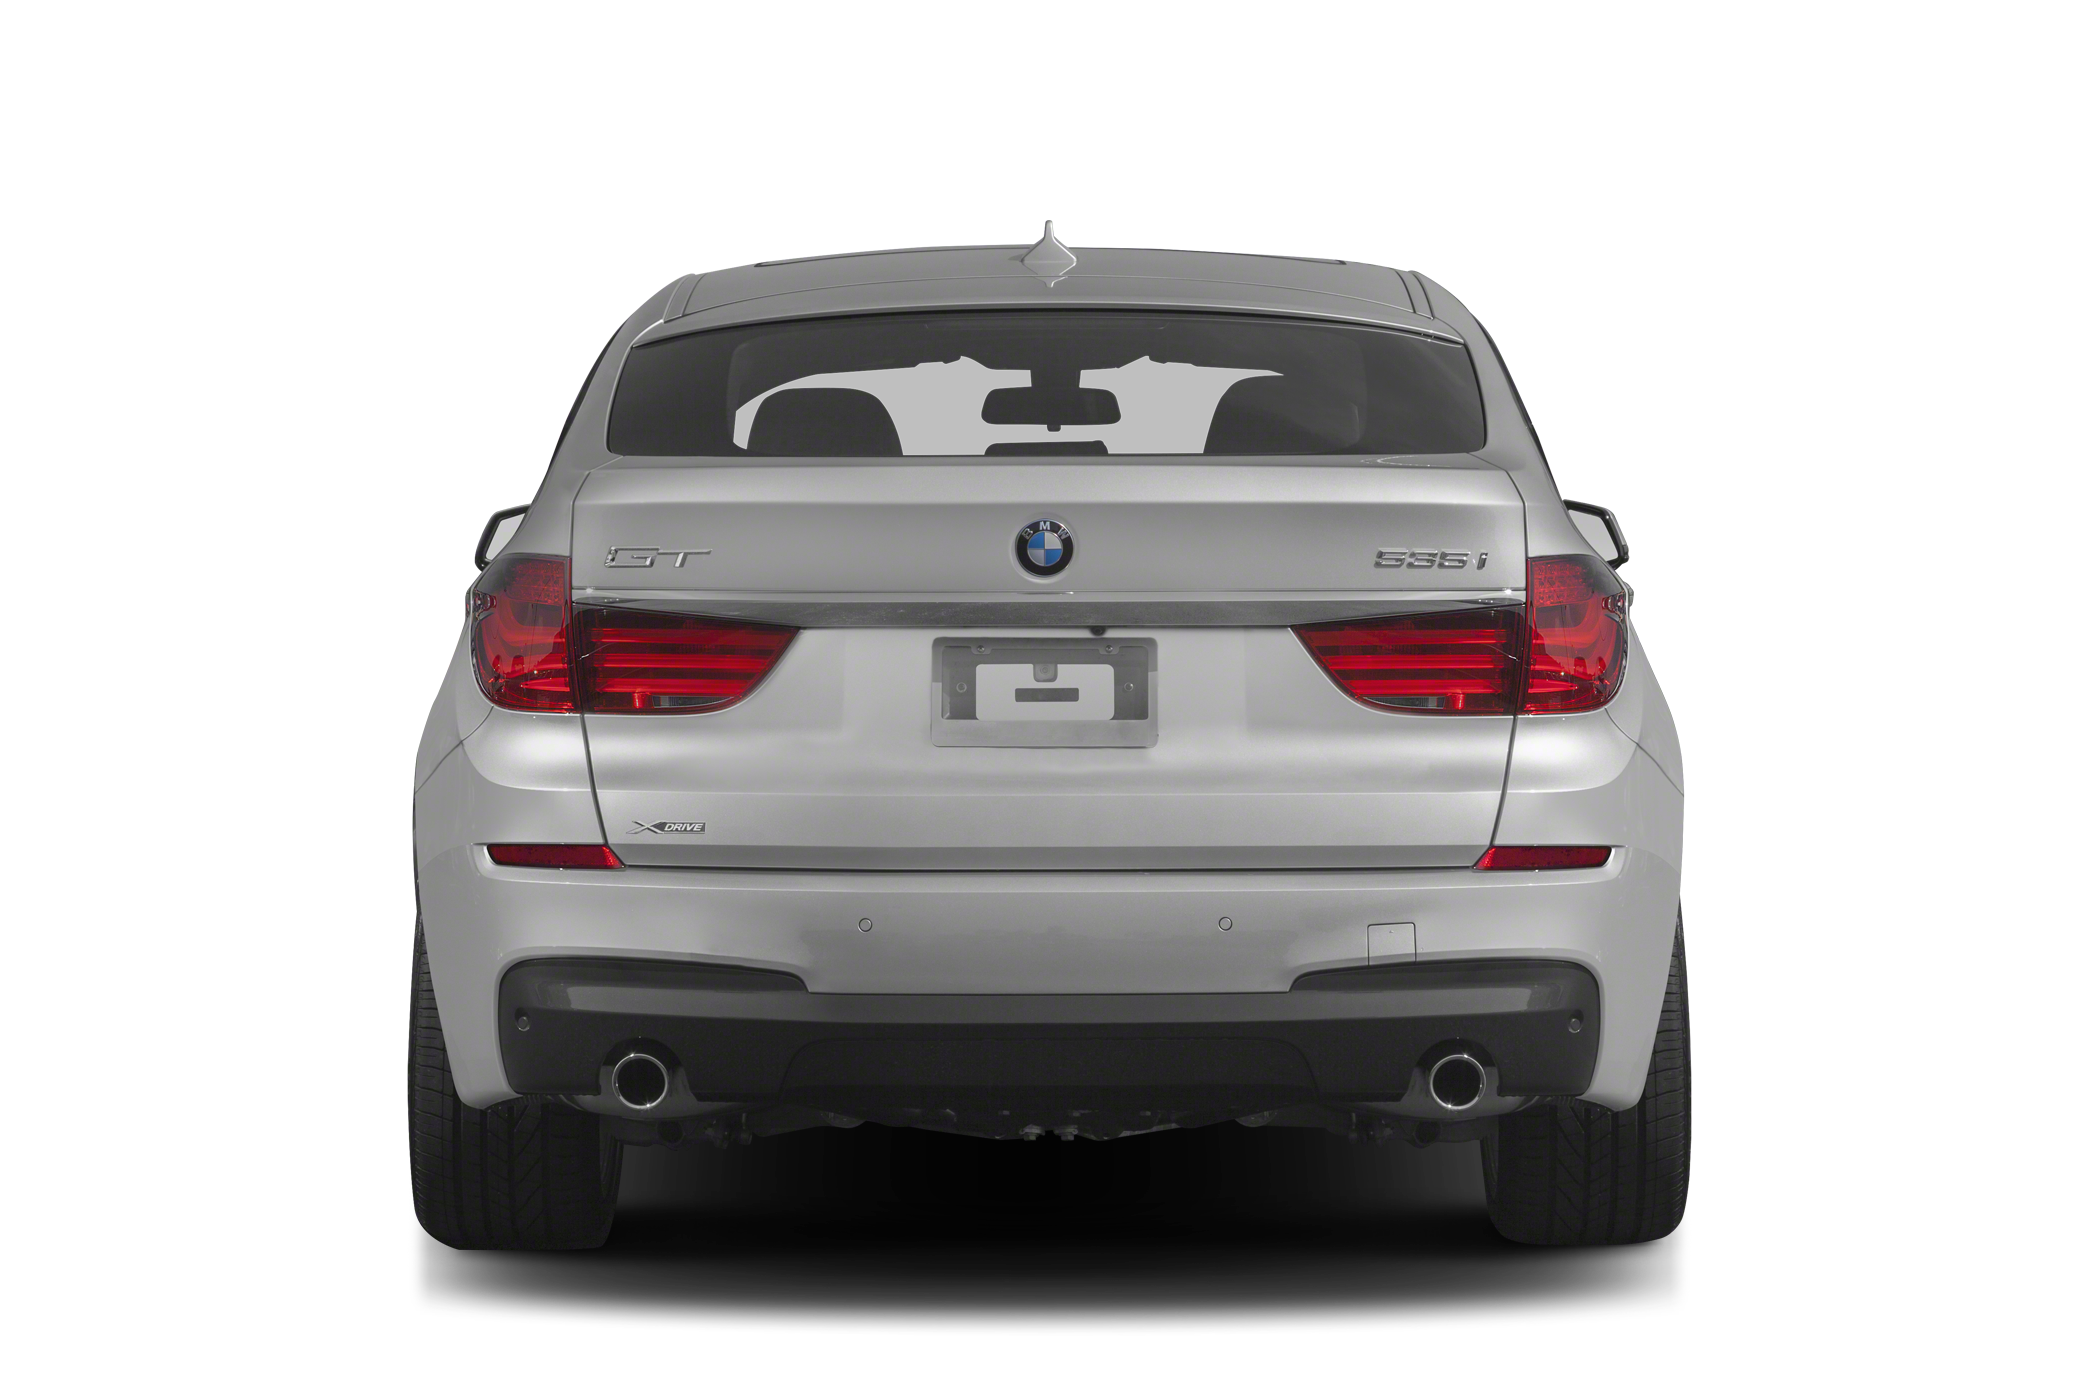 2013 BMW 550 Gran Turismo